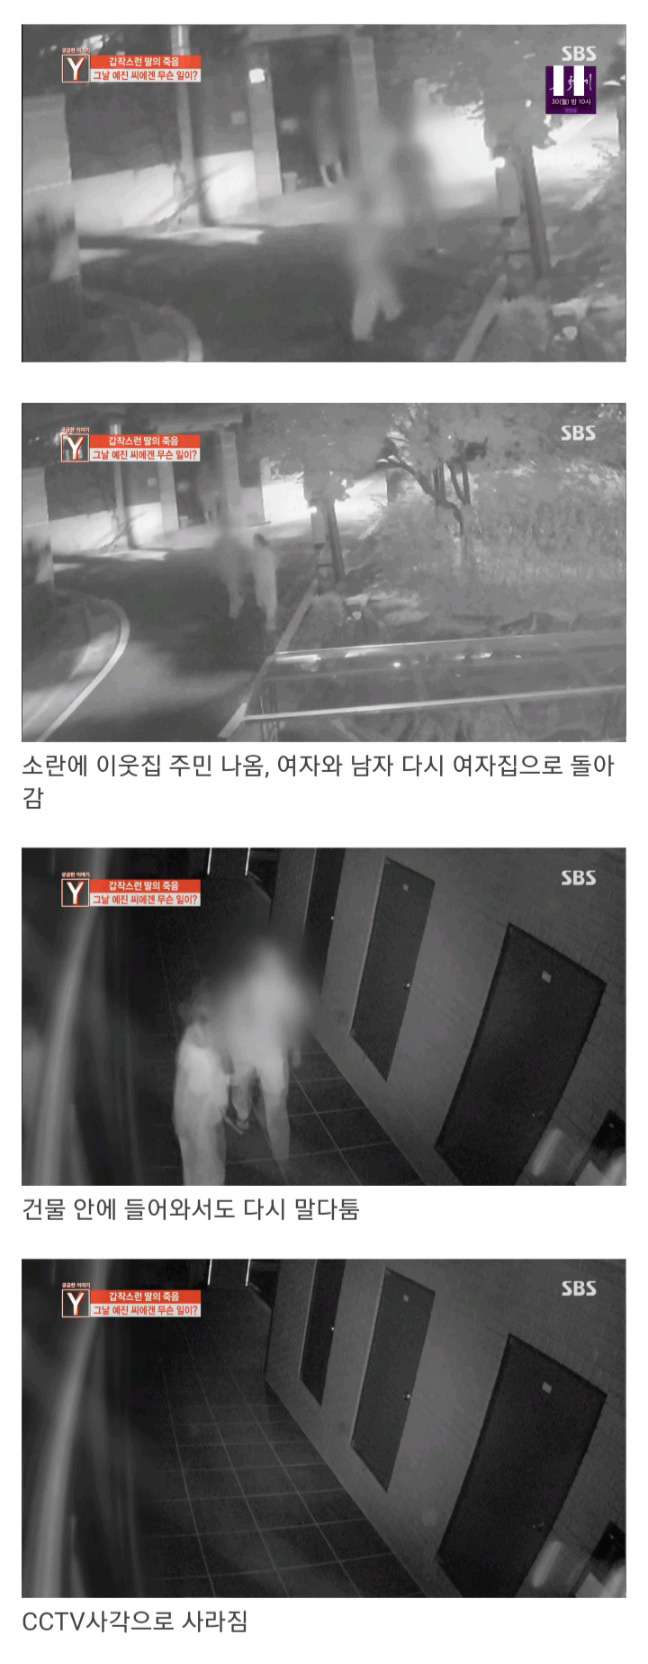 궁금한이야기Y 데이트폭행 사망사건 CCTV 타임라인